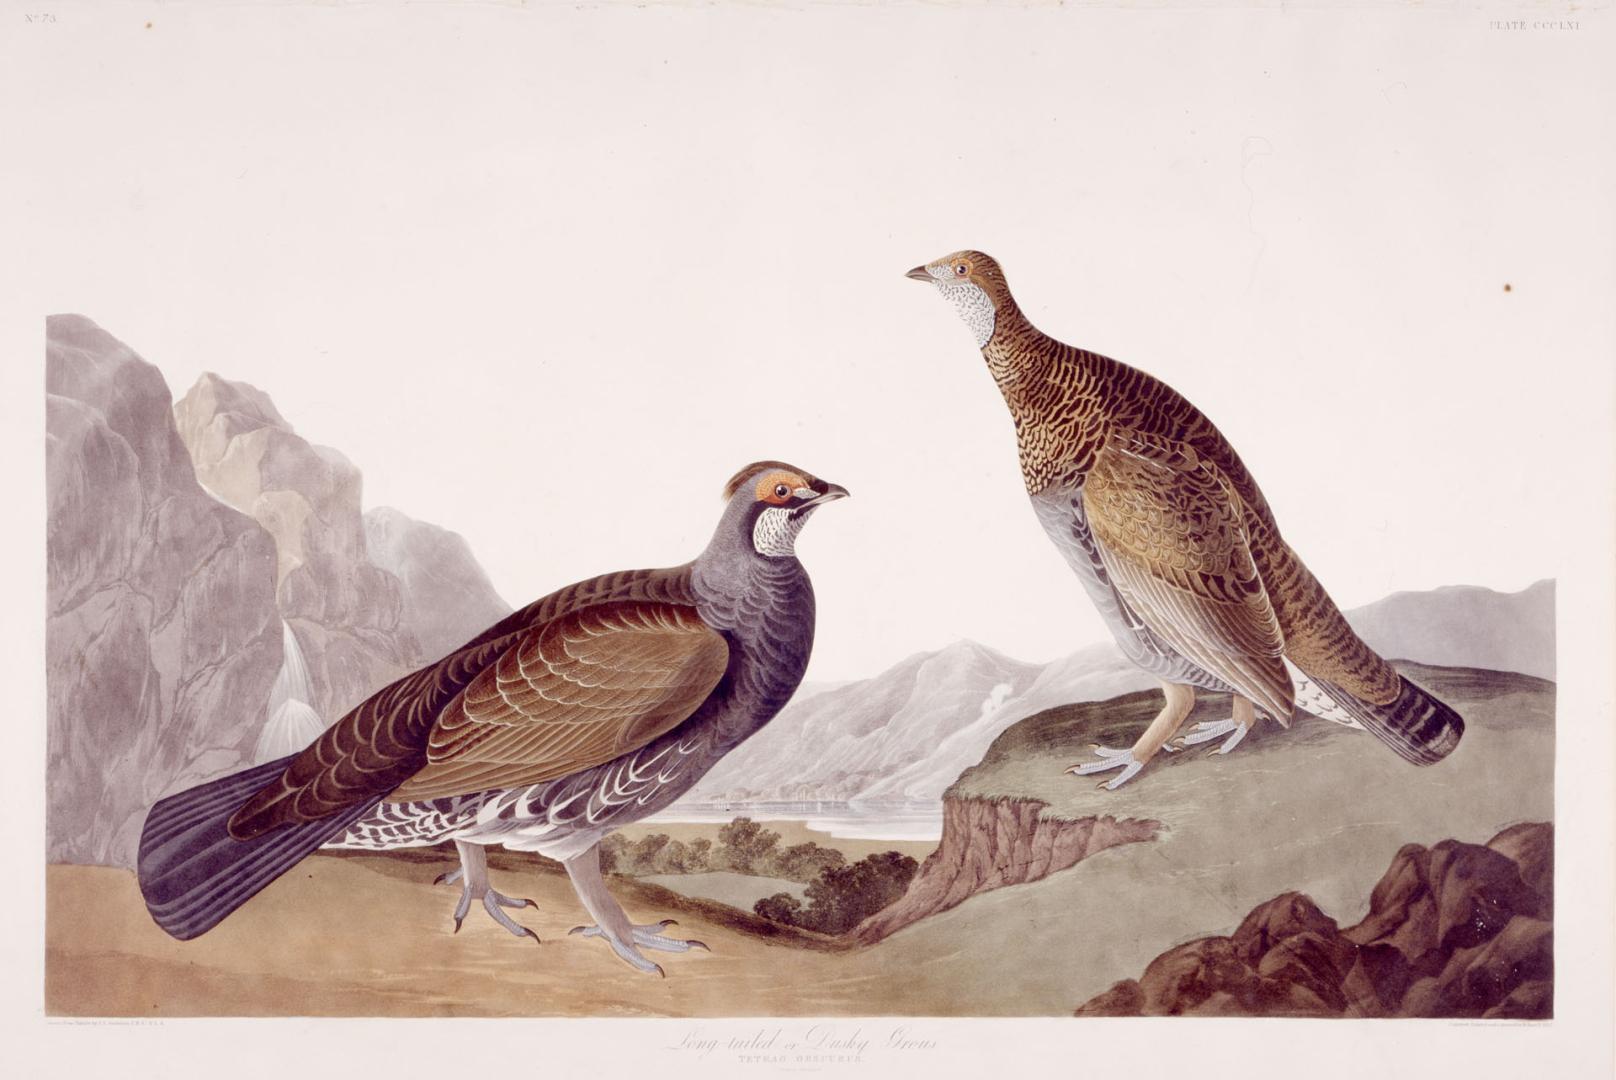 Long-tailed or dusky grouse